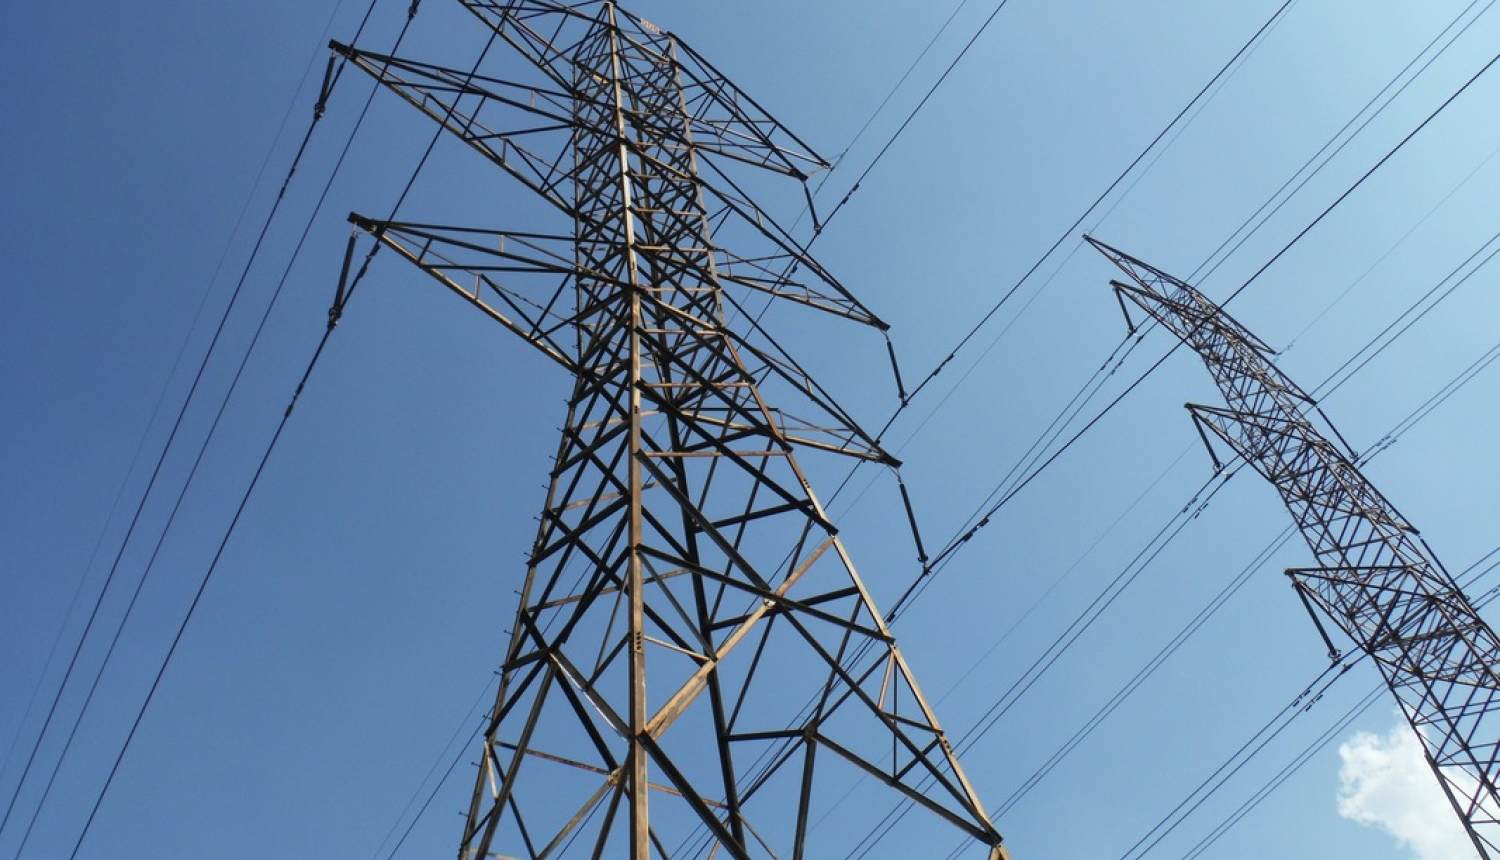 Valdība sper nākamo soli OIK sistēmas sakārtošanā un vēl pastiprina obligātā iepirkuma elektrostaciju uzraudzību